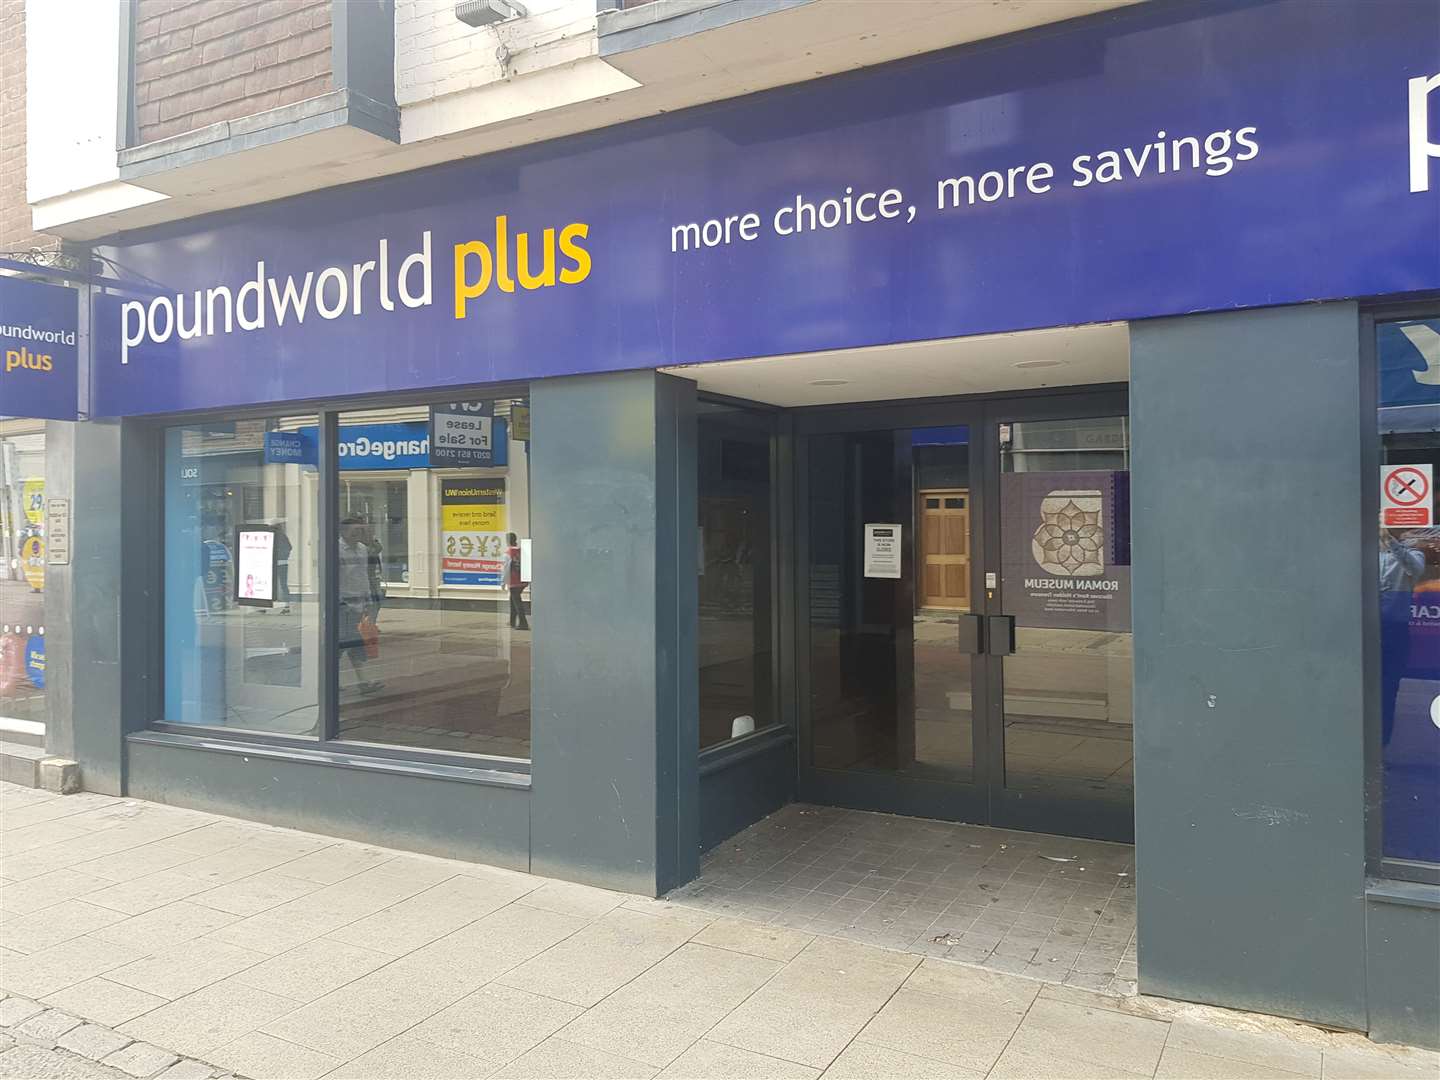 Poundworld shut more than a year ago